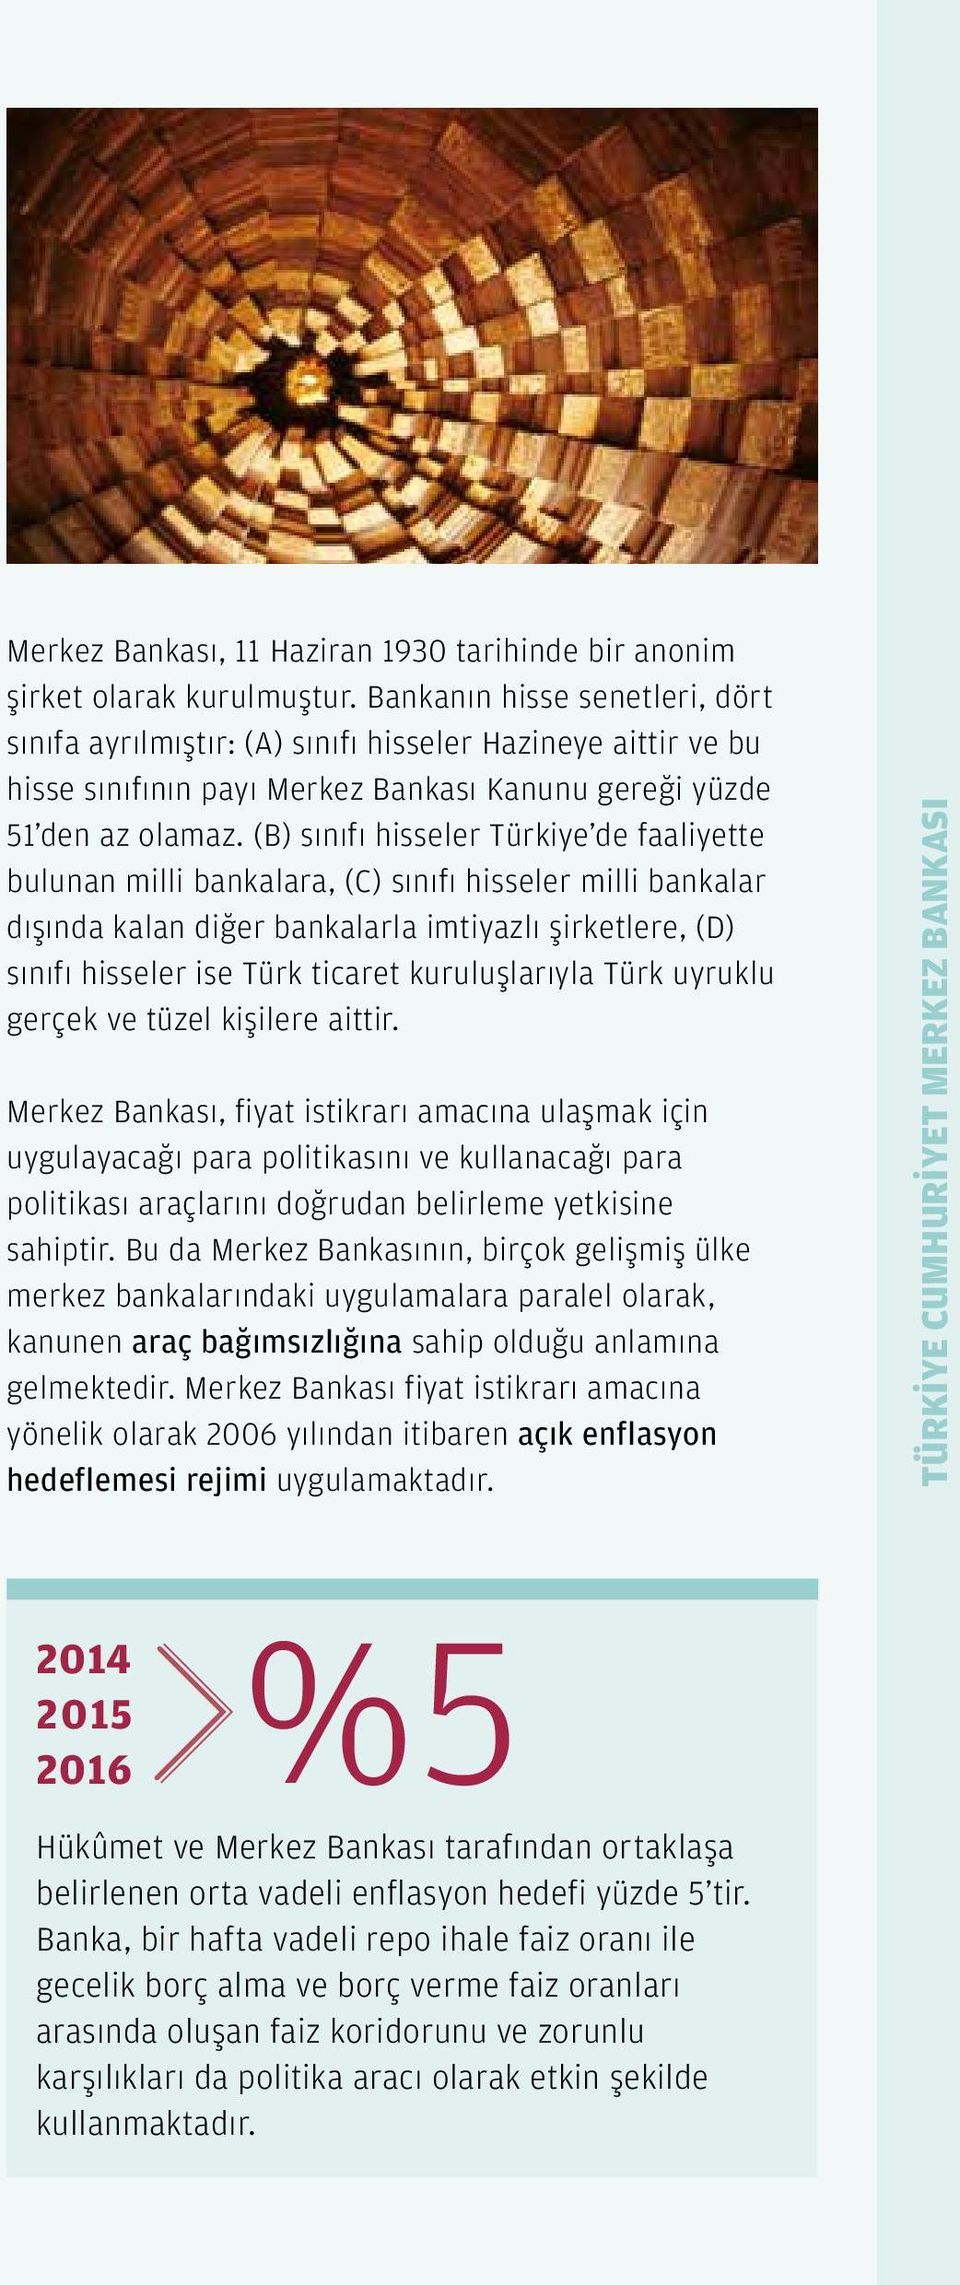 (B) sınıfı hisseler Türkiye de faaliyette bulunan milli bankalara, (C) sınıfı hisseler milli bankalar dışında kalan diğer bankalarla imtiyazlı şirketlere, (D) sınıfı hisseler ise Türk ticaret